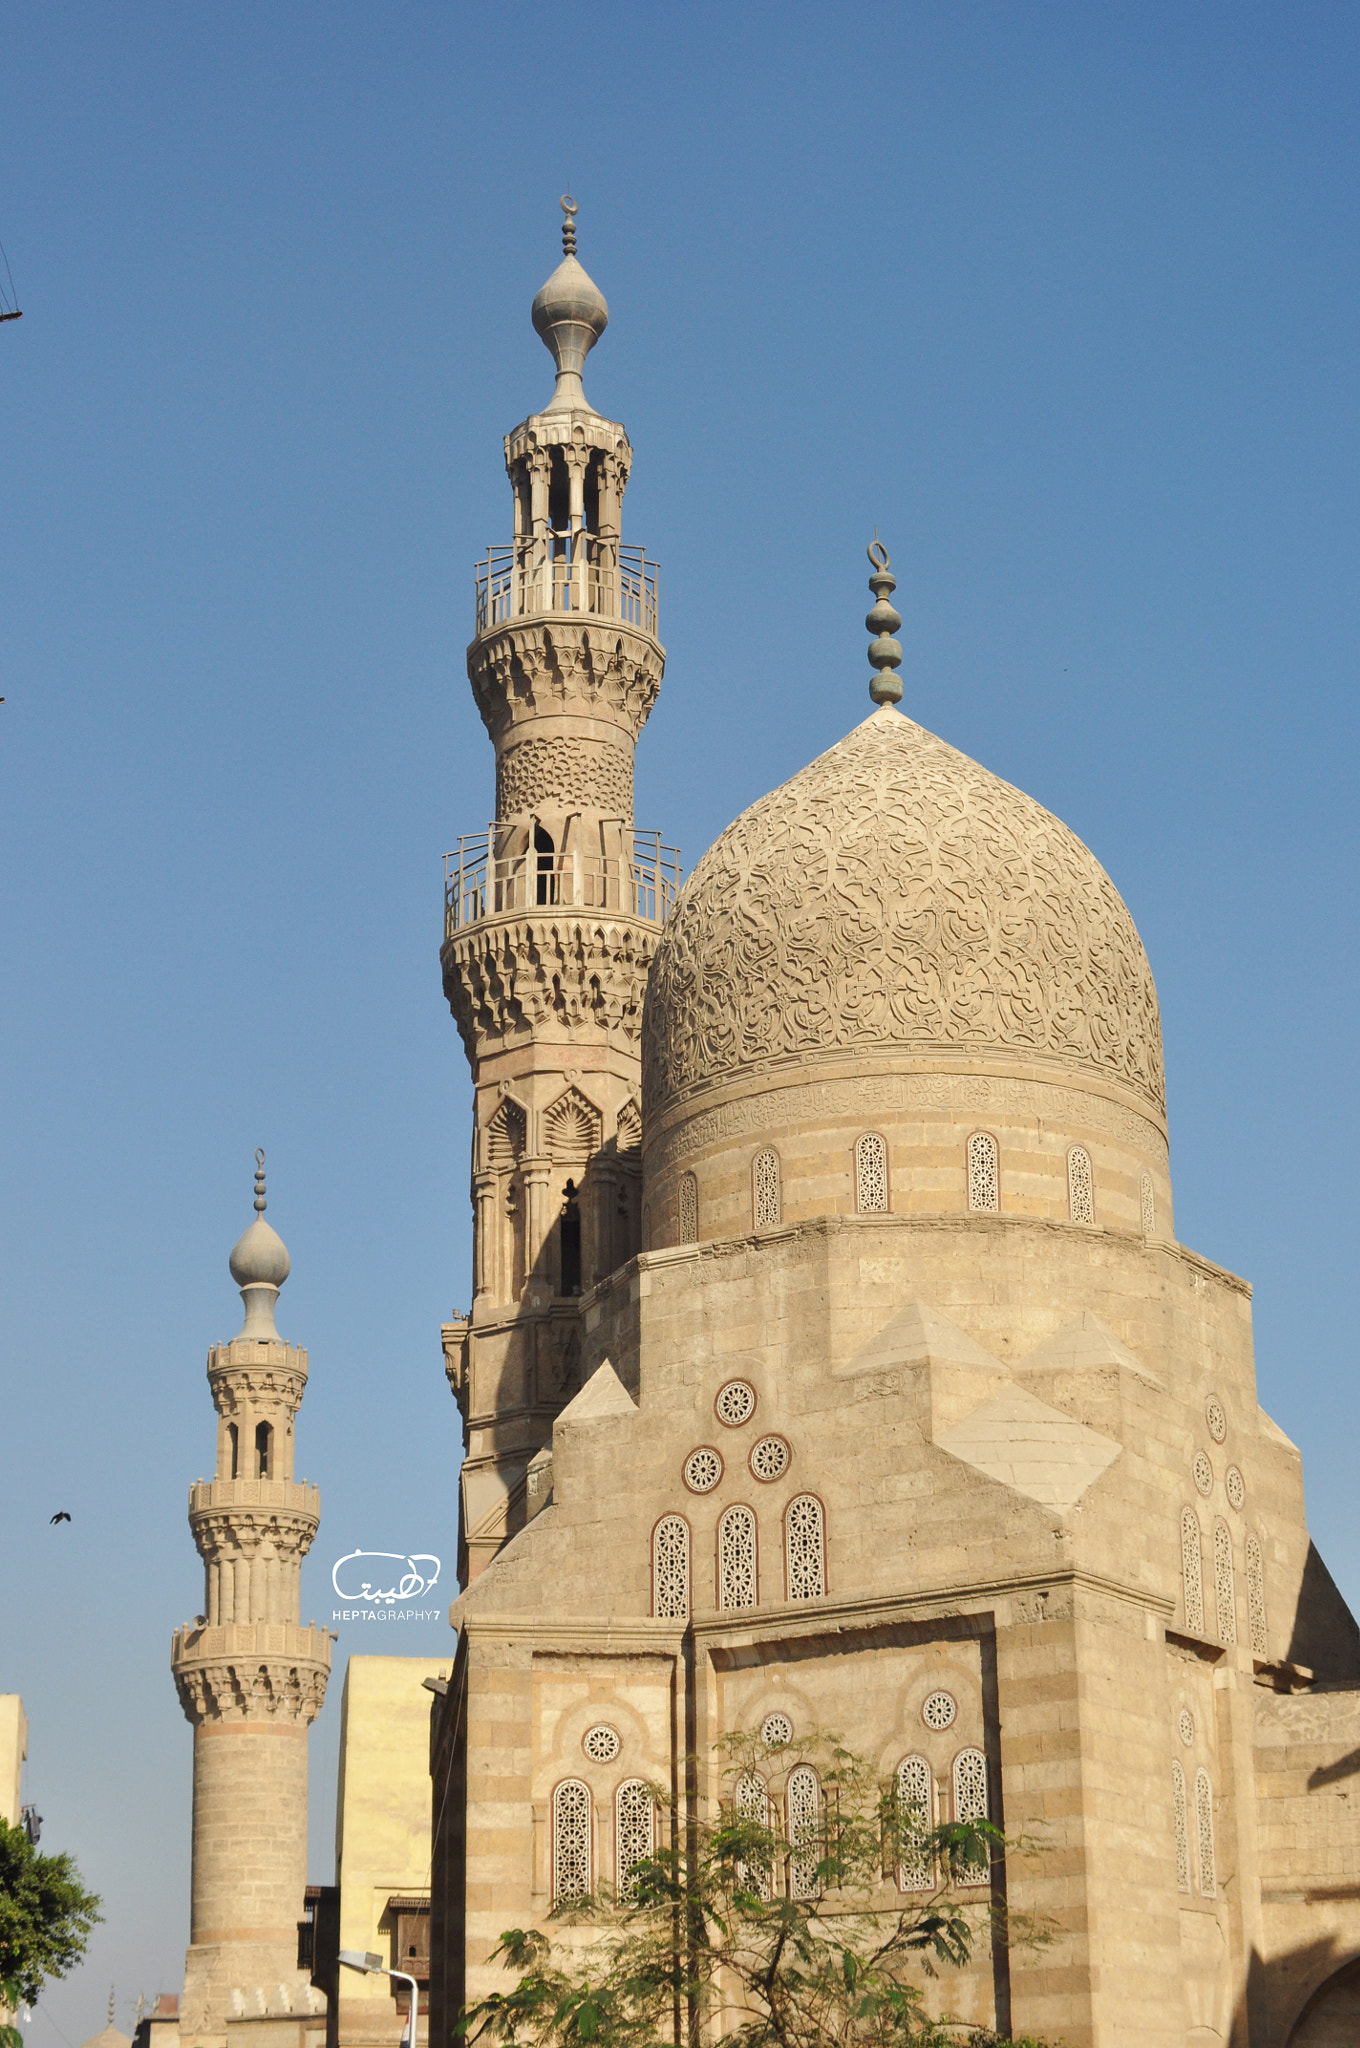 Nikon D90 + AF Zoom-Nikkor 35-135mm f/3.5-4.5 N sample photo. The kaire bek mosque ,egypt photography